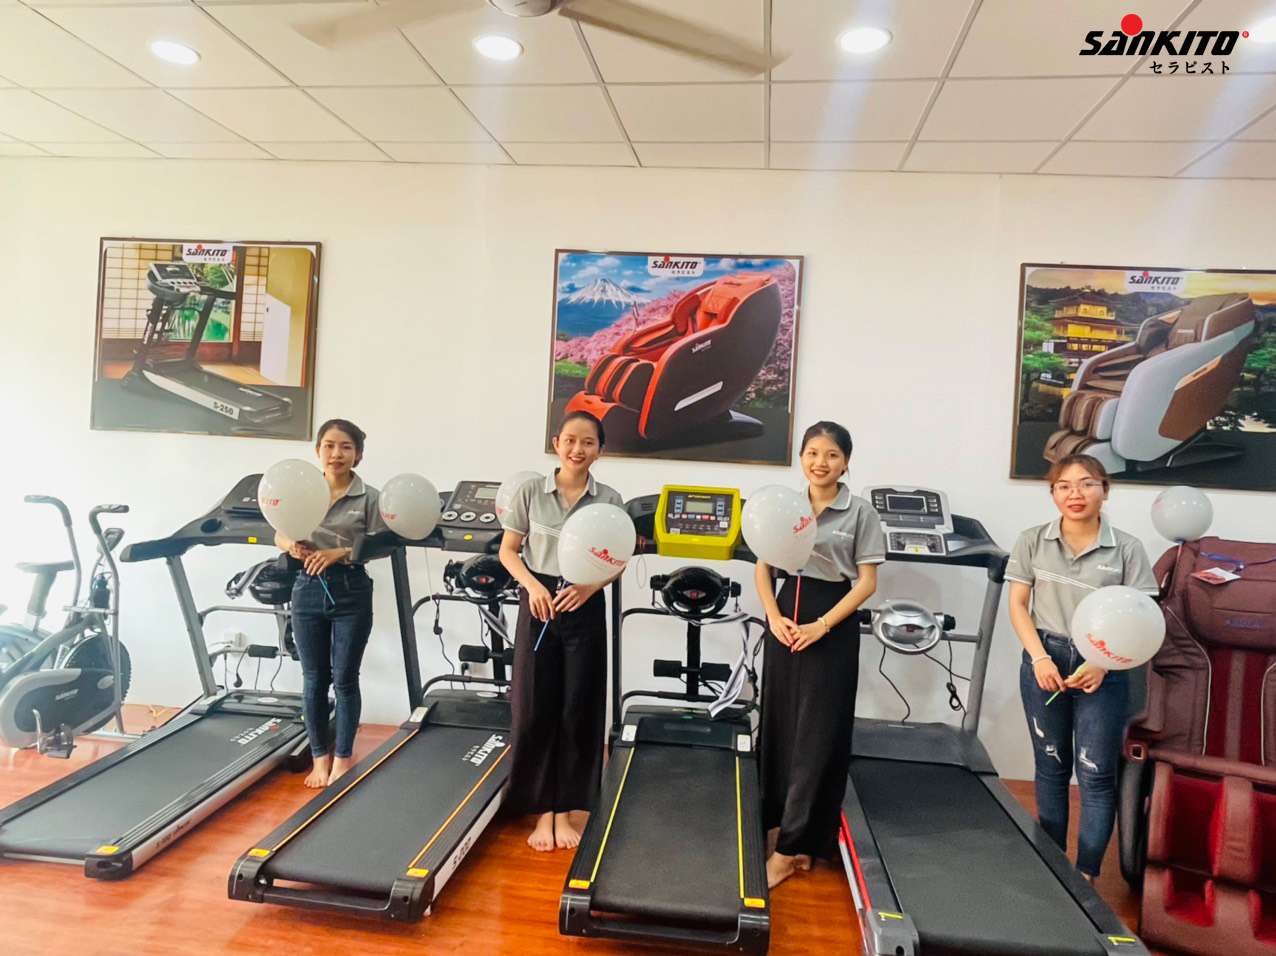 Máy chạy bộ Sankito - Xu hướng rèn luyện sức khỏe mới